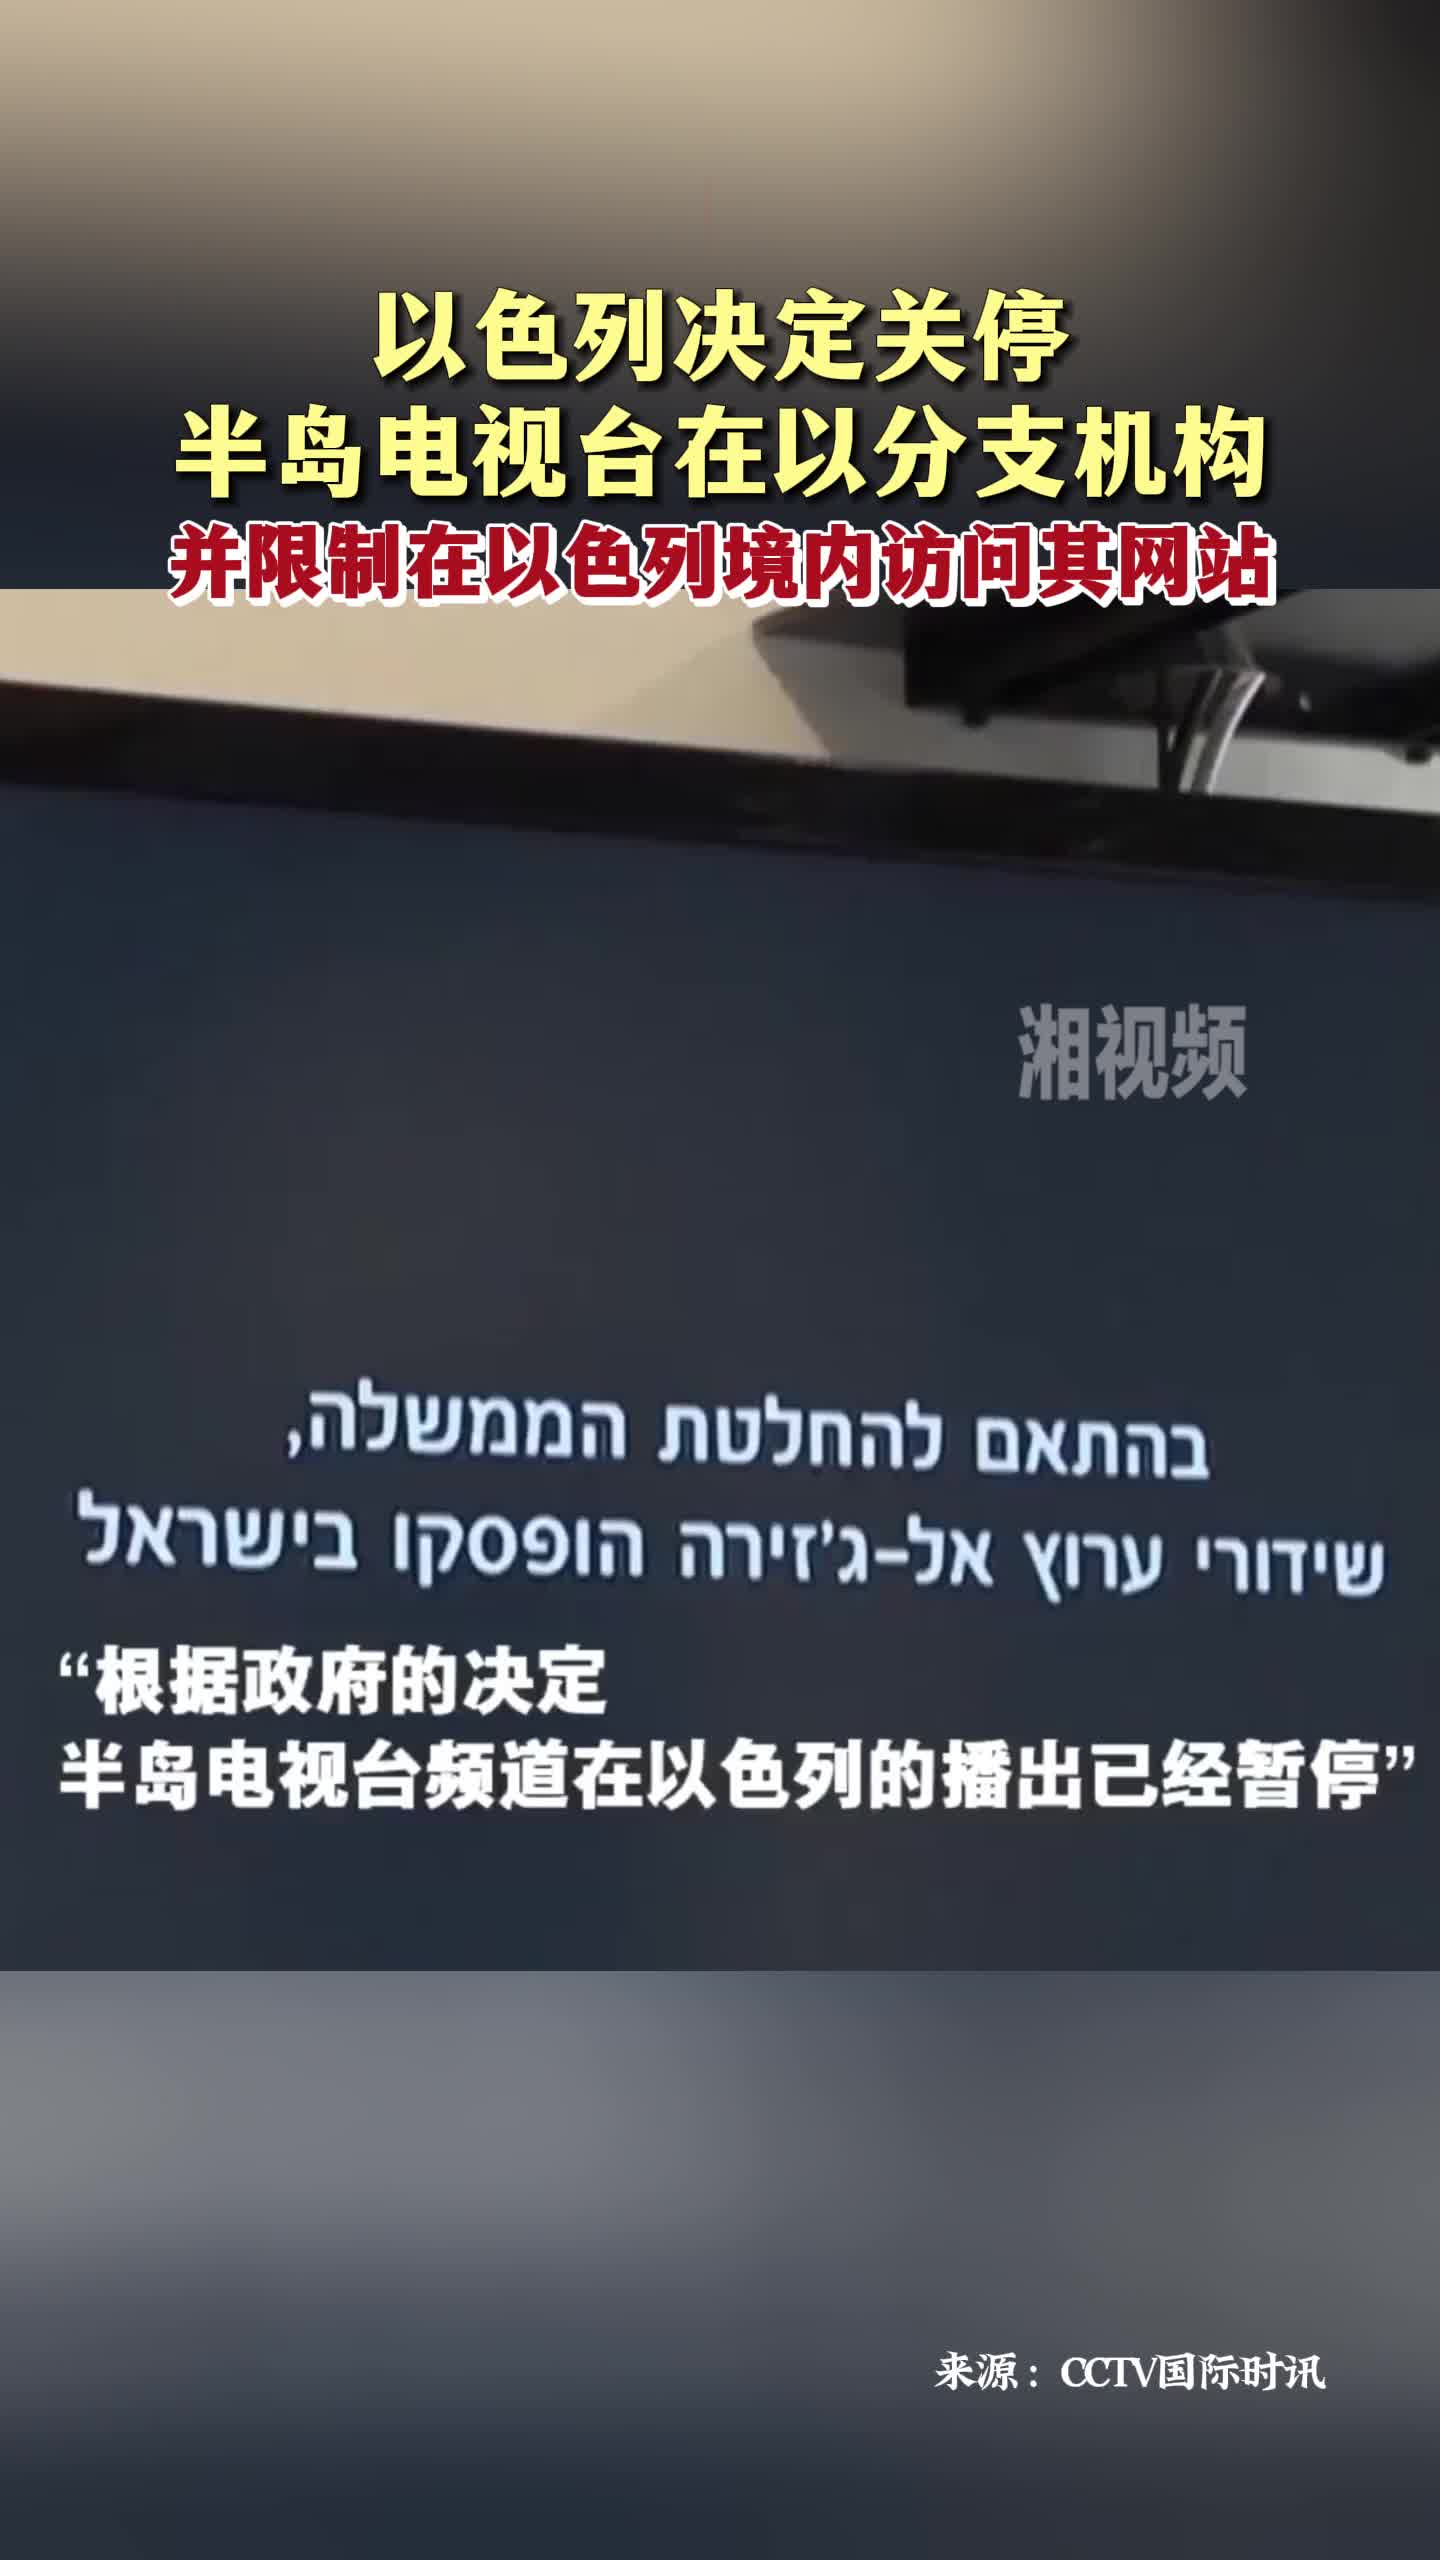 以色列决定关停半岛电视台在以分支机构